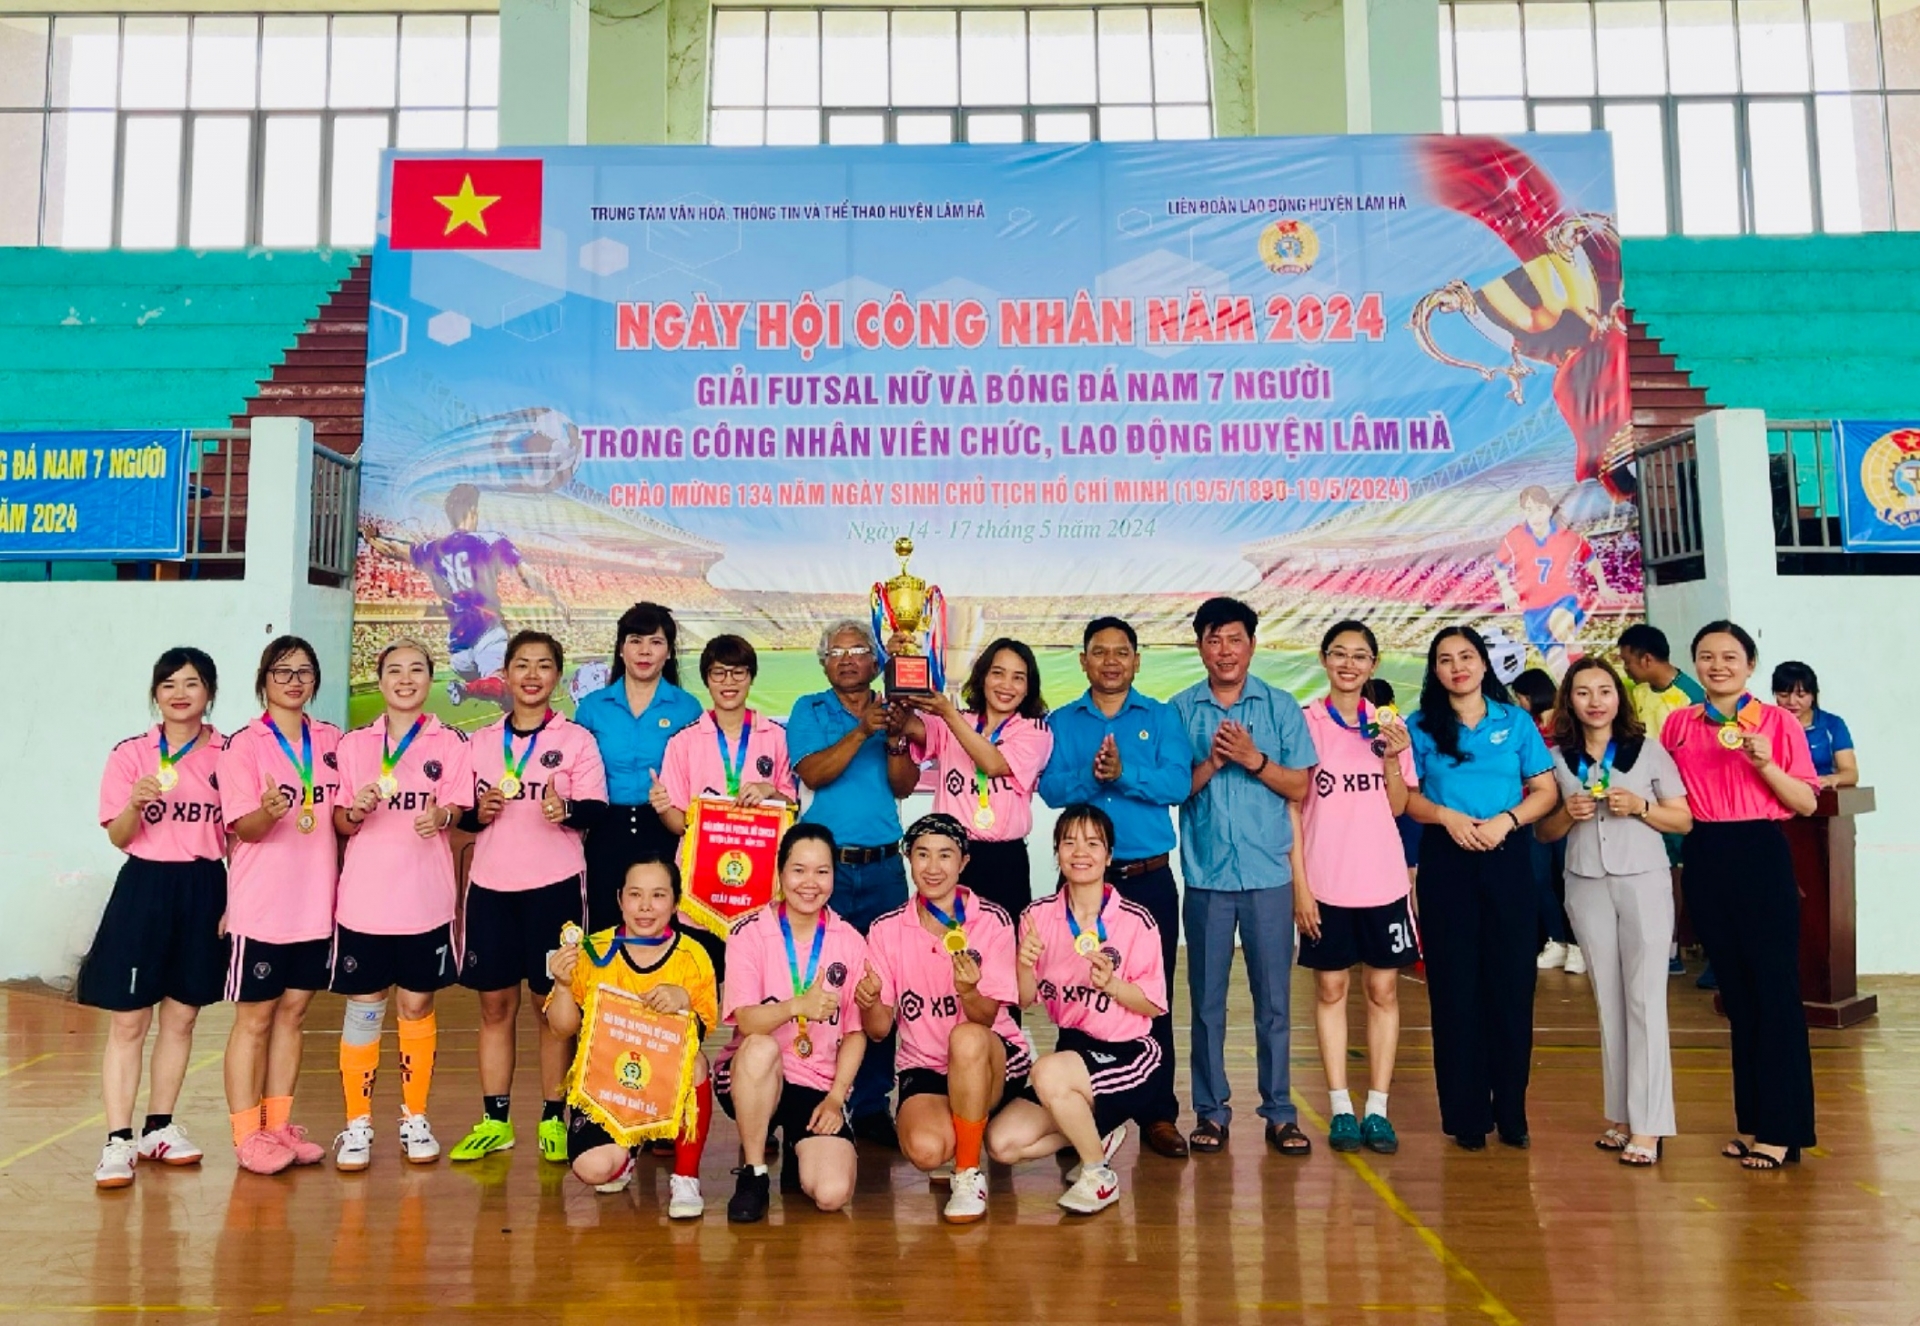 Trao giải Nhất Futsal nữ cho đội Công đoàn cơ sở các xã cụm Tân Hà